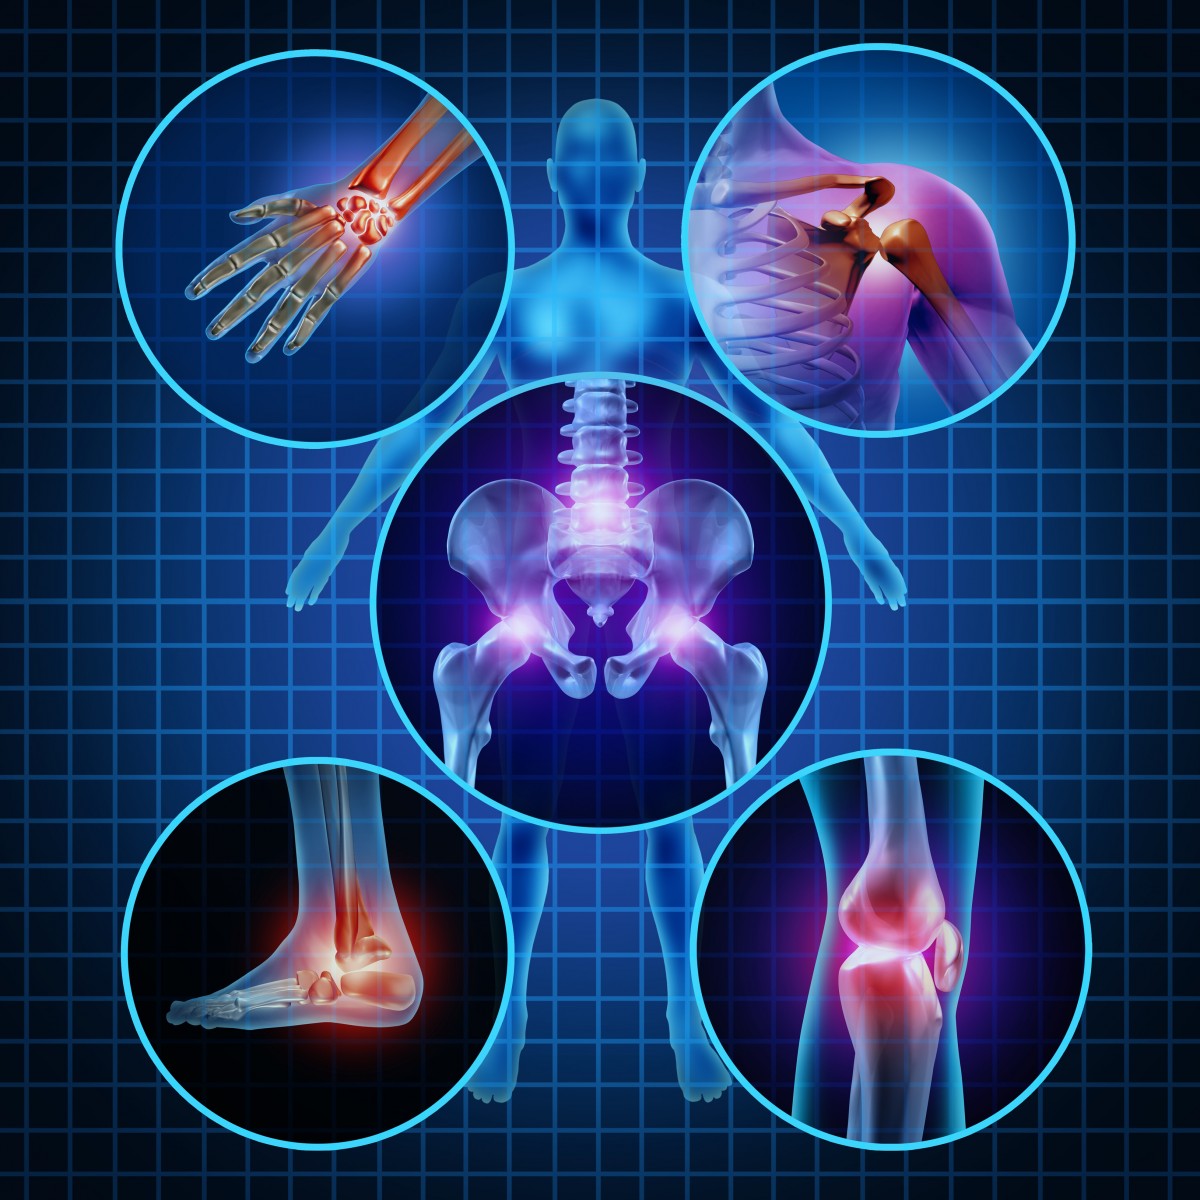 rheumatoid arthritis and Parkinson's